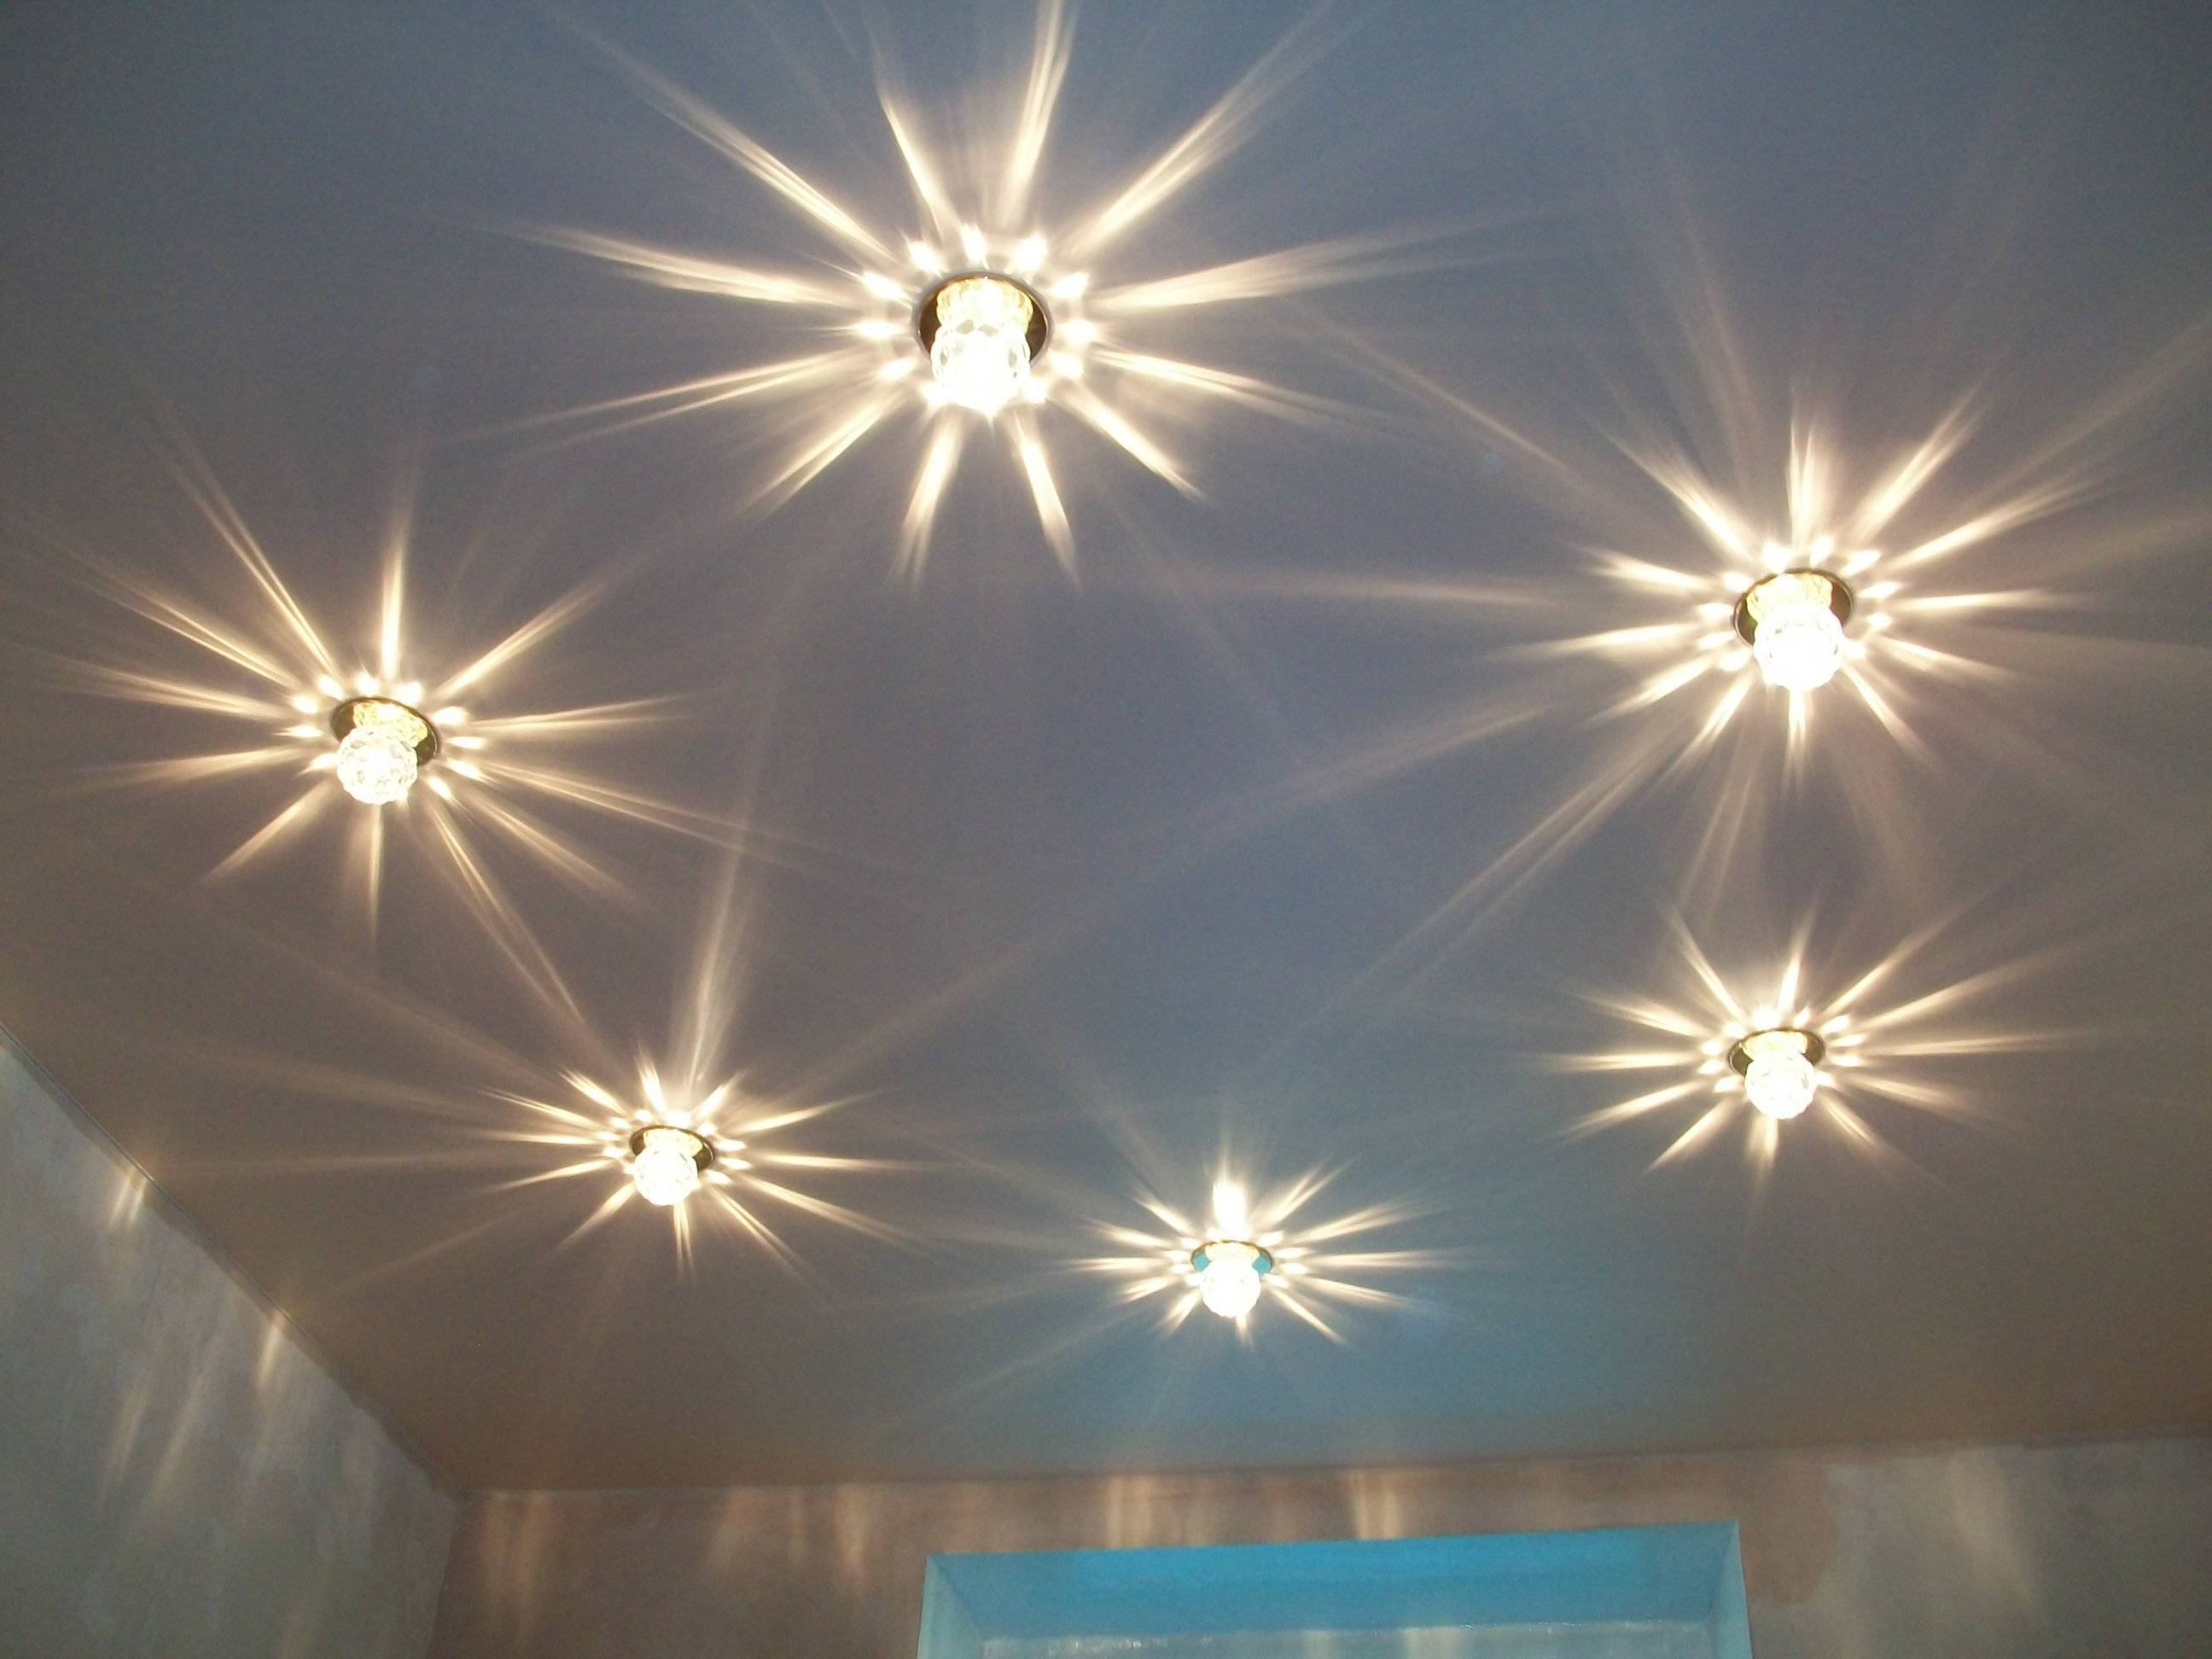 Как расположить светильники на натяжном потолке? (11 фото)